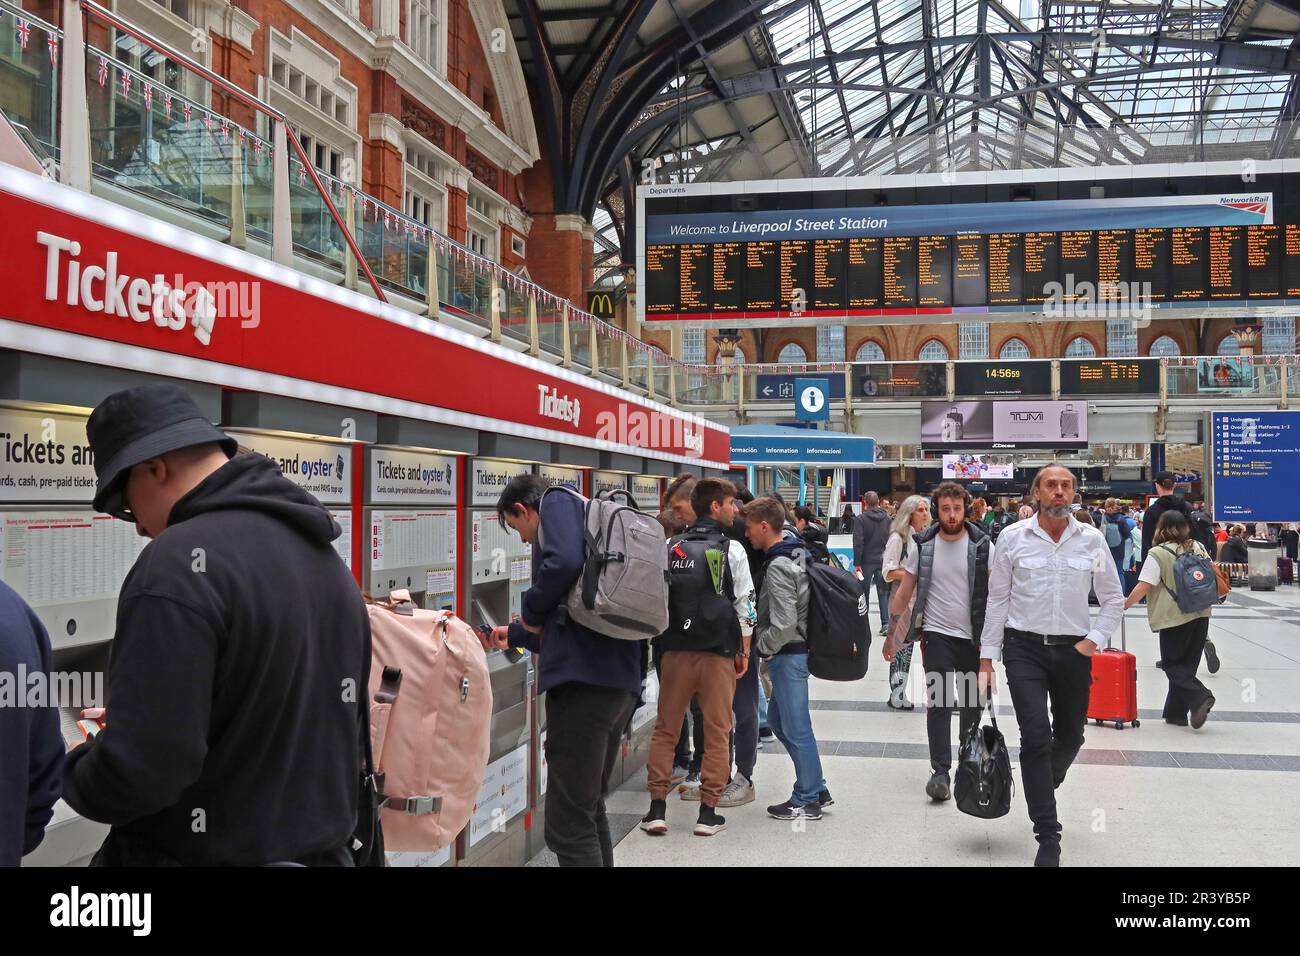 Achat de billets de train et d'Oyster Liverpool Street Station, concourse , Londres, Angleterre, Royaume-Uni, EC2M 7PY - machines à billets Banque D'Images